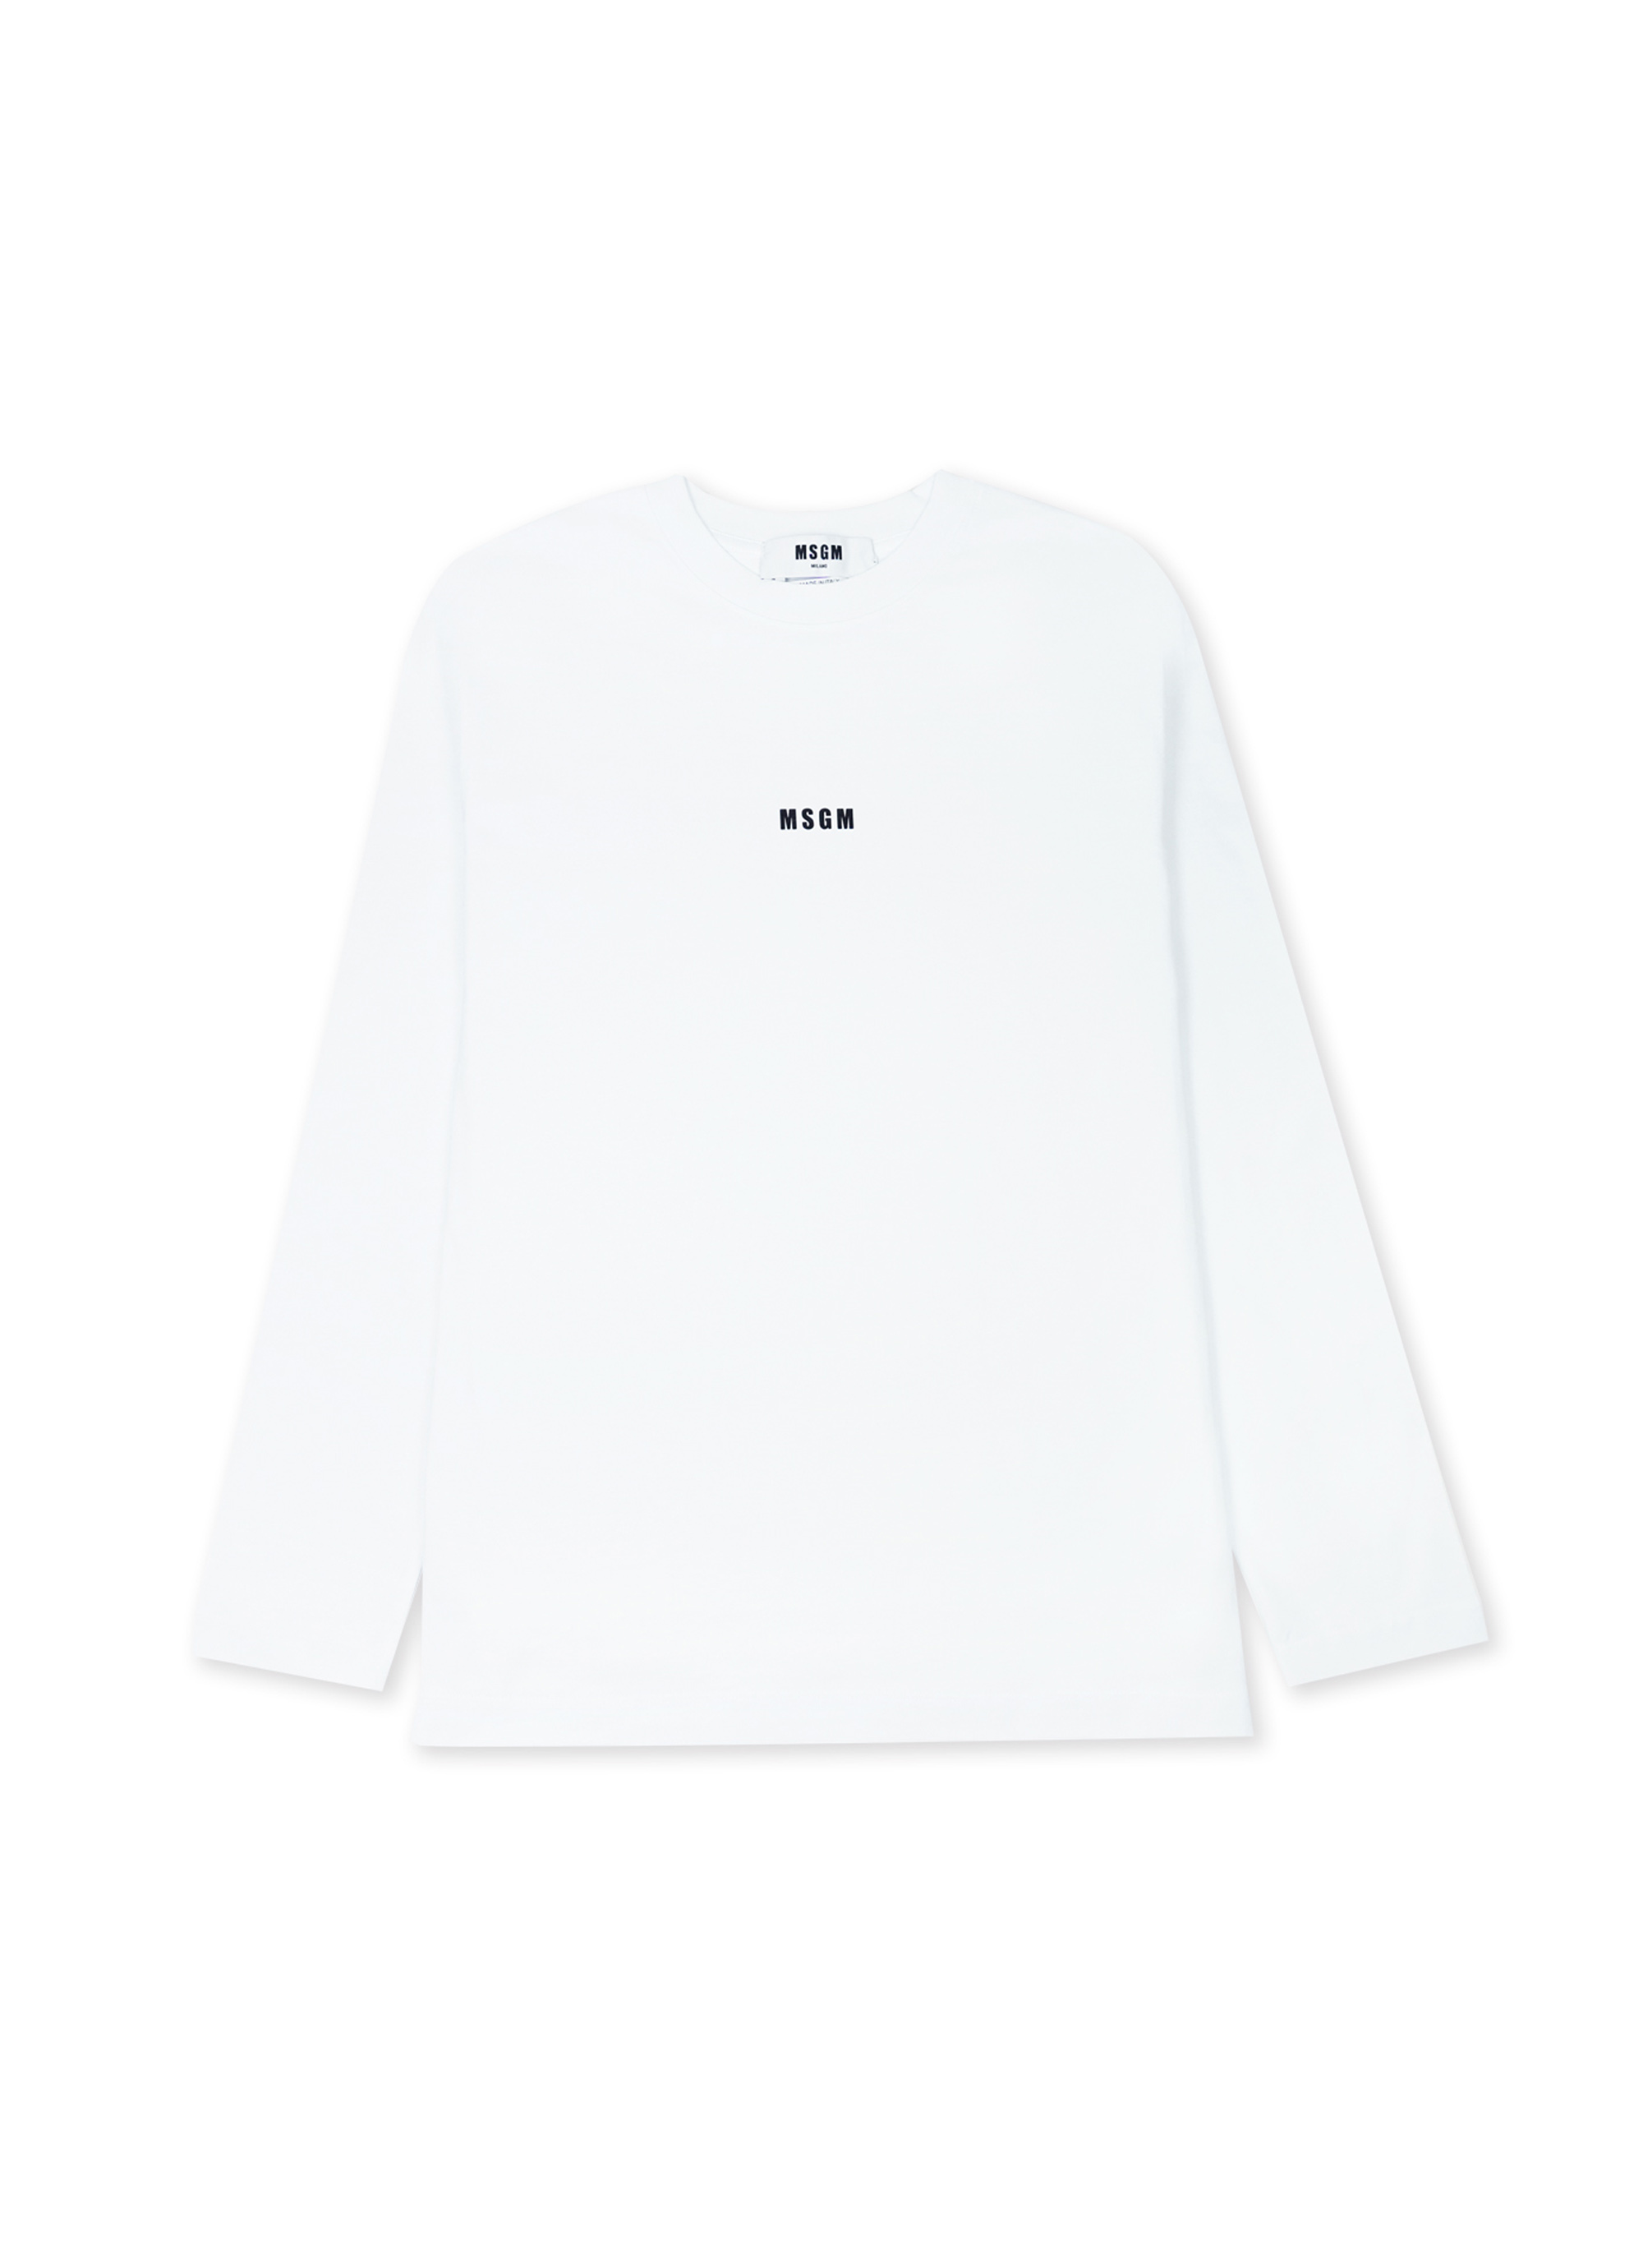 ミニロゴ ロングスリーブ Tシャツ【Basic Color】 詳細画像 ホワイト 1